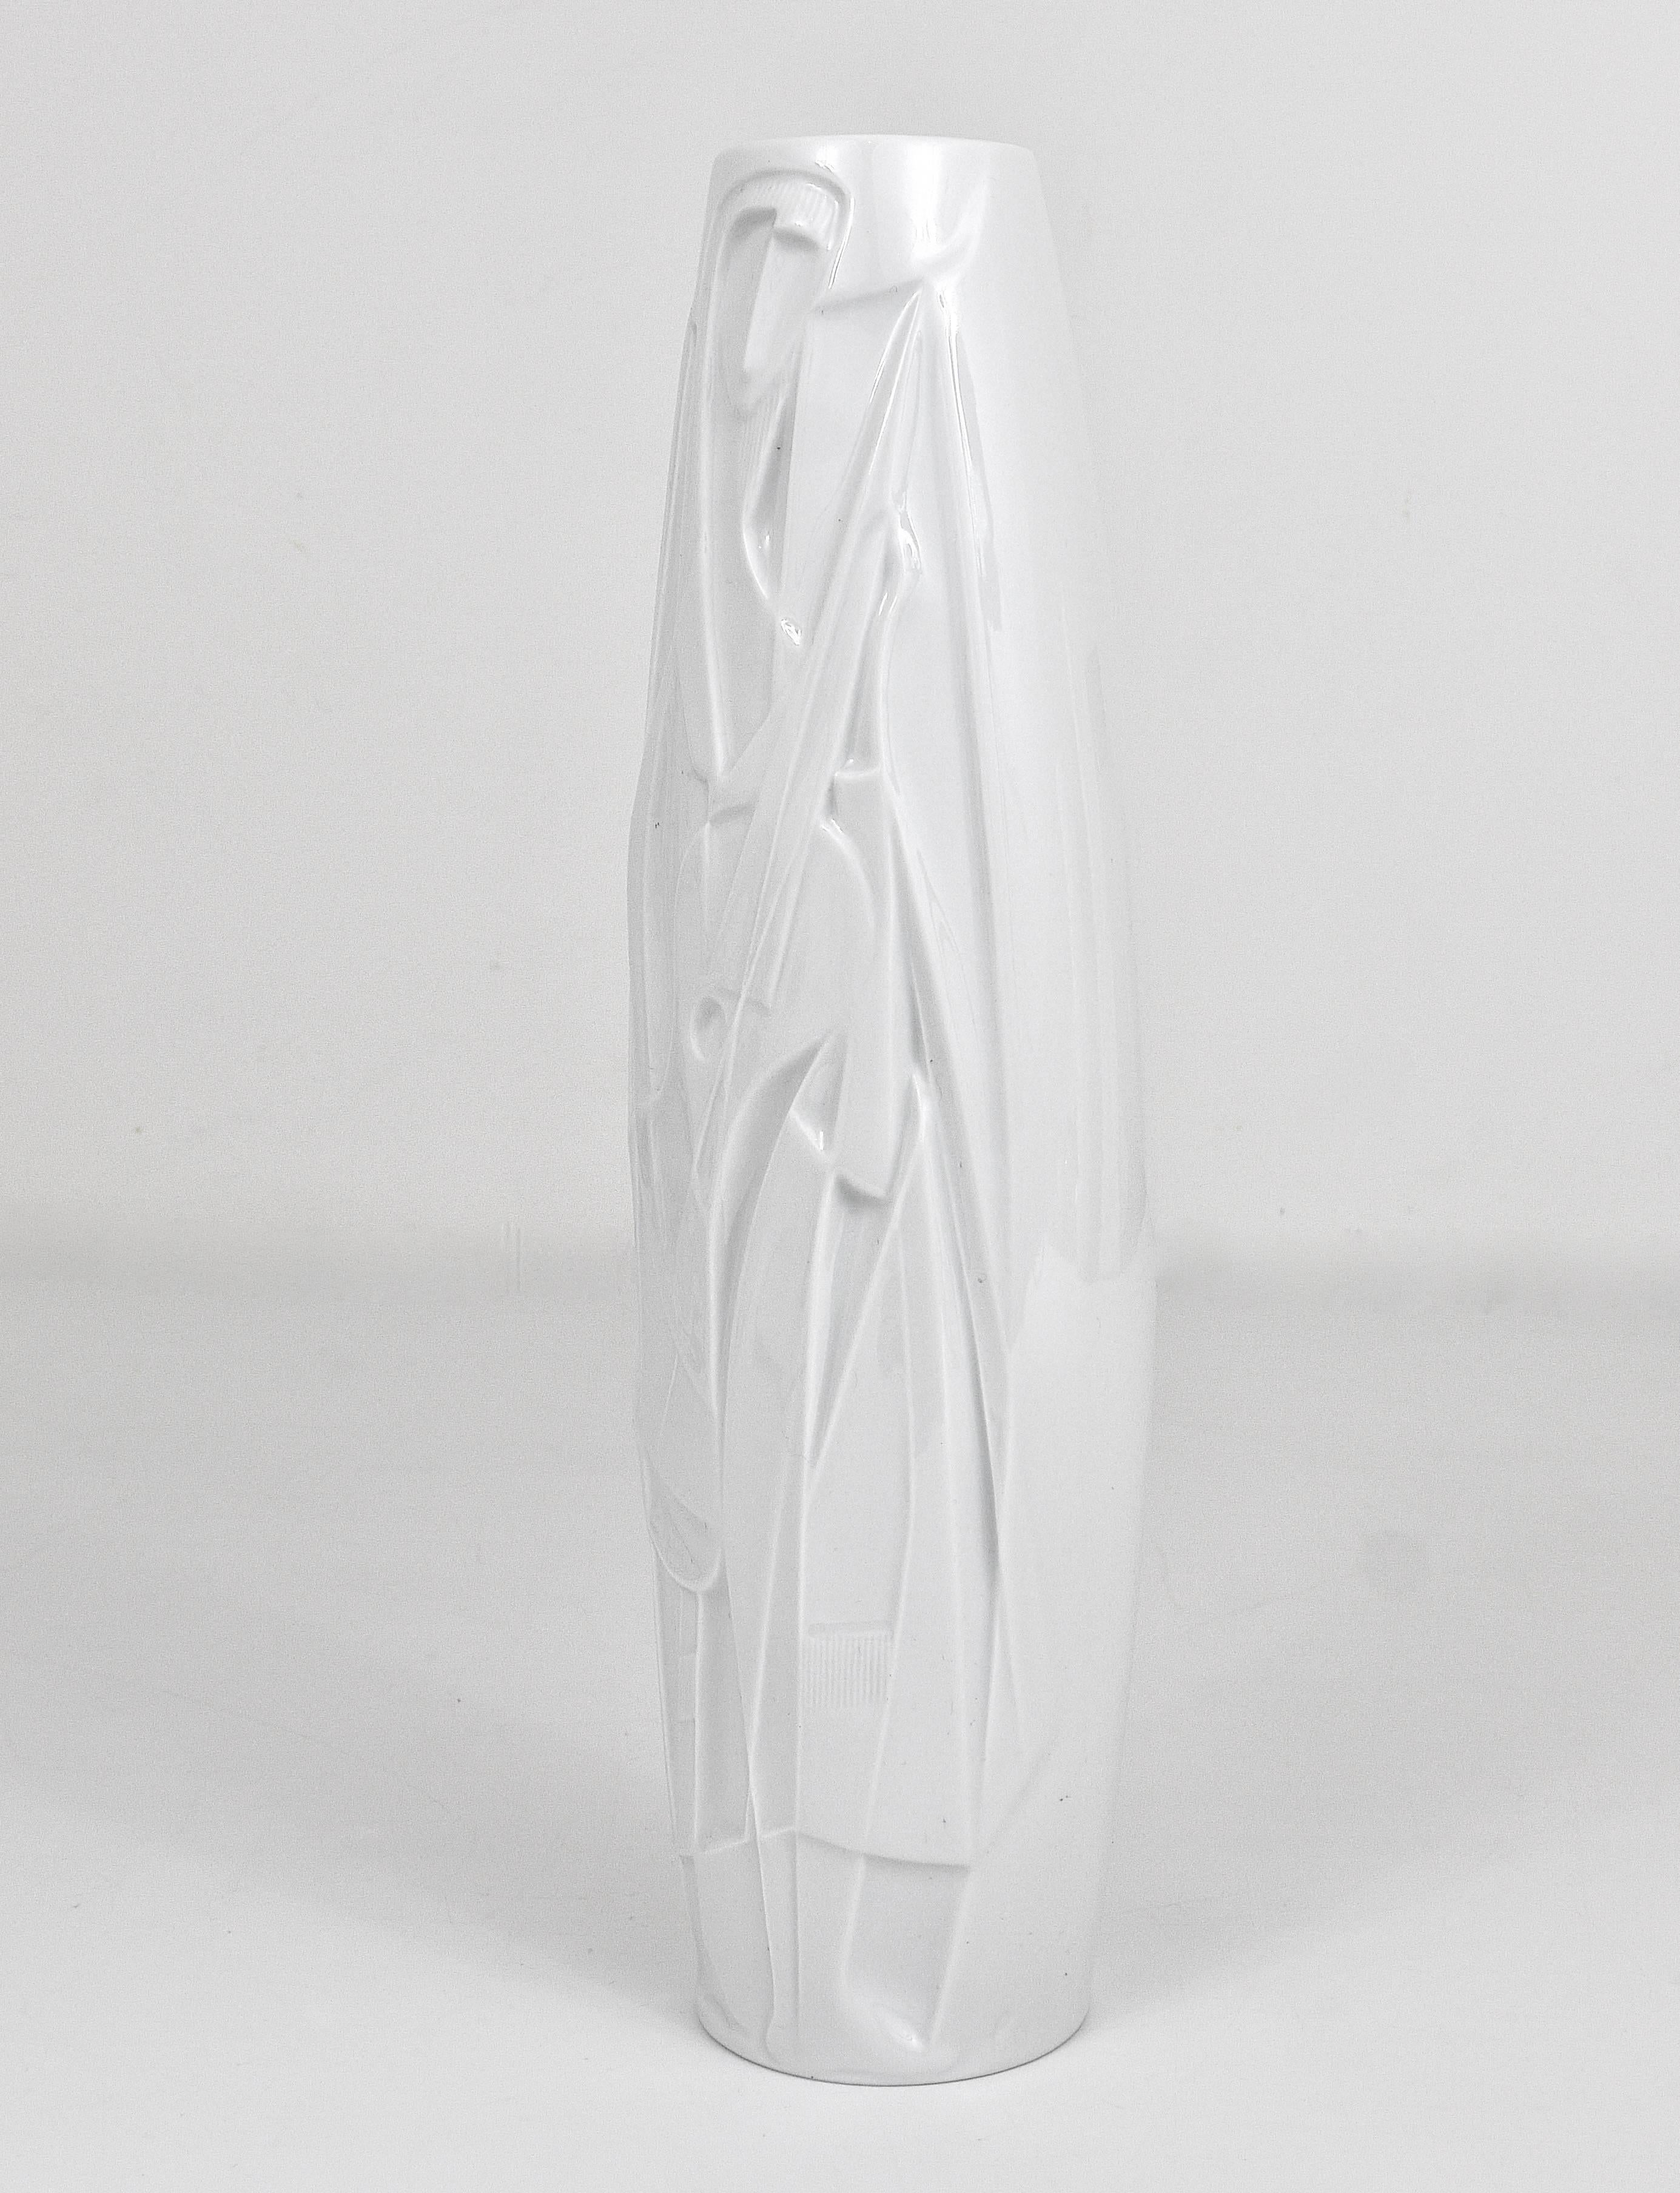 XX secolo Cuno Fischer Rosenthal Studio-Linie Vaso in porcellana Op Art a rilievo bianco, anni '60 in vendita